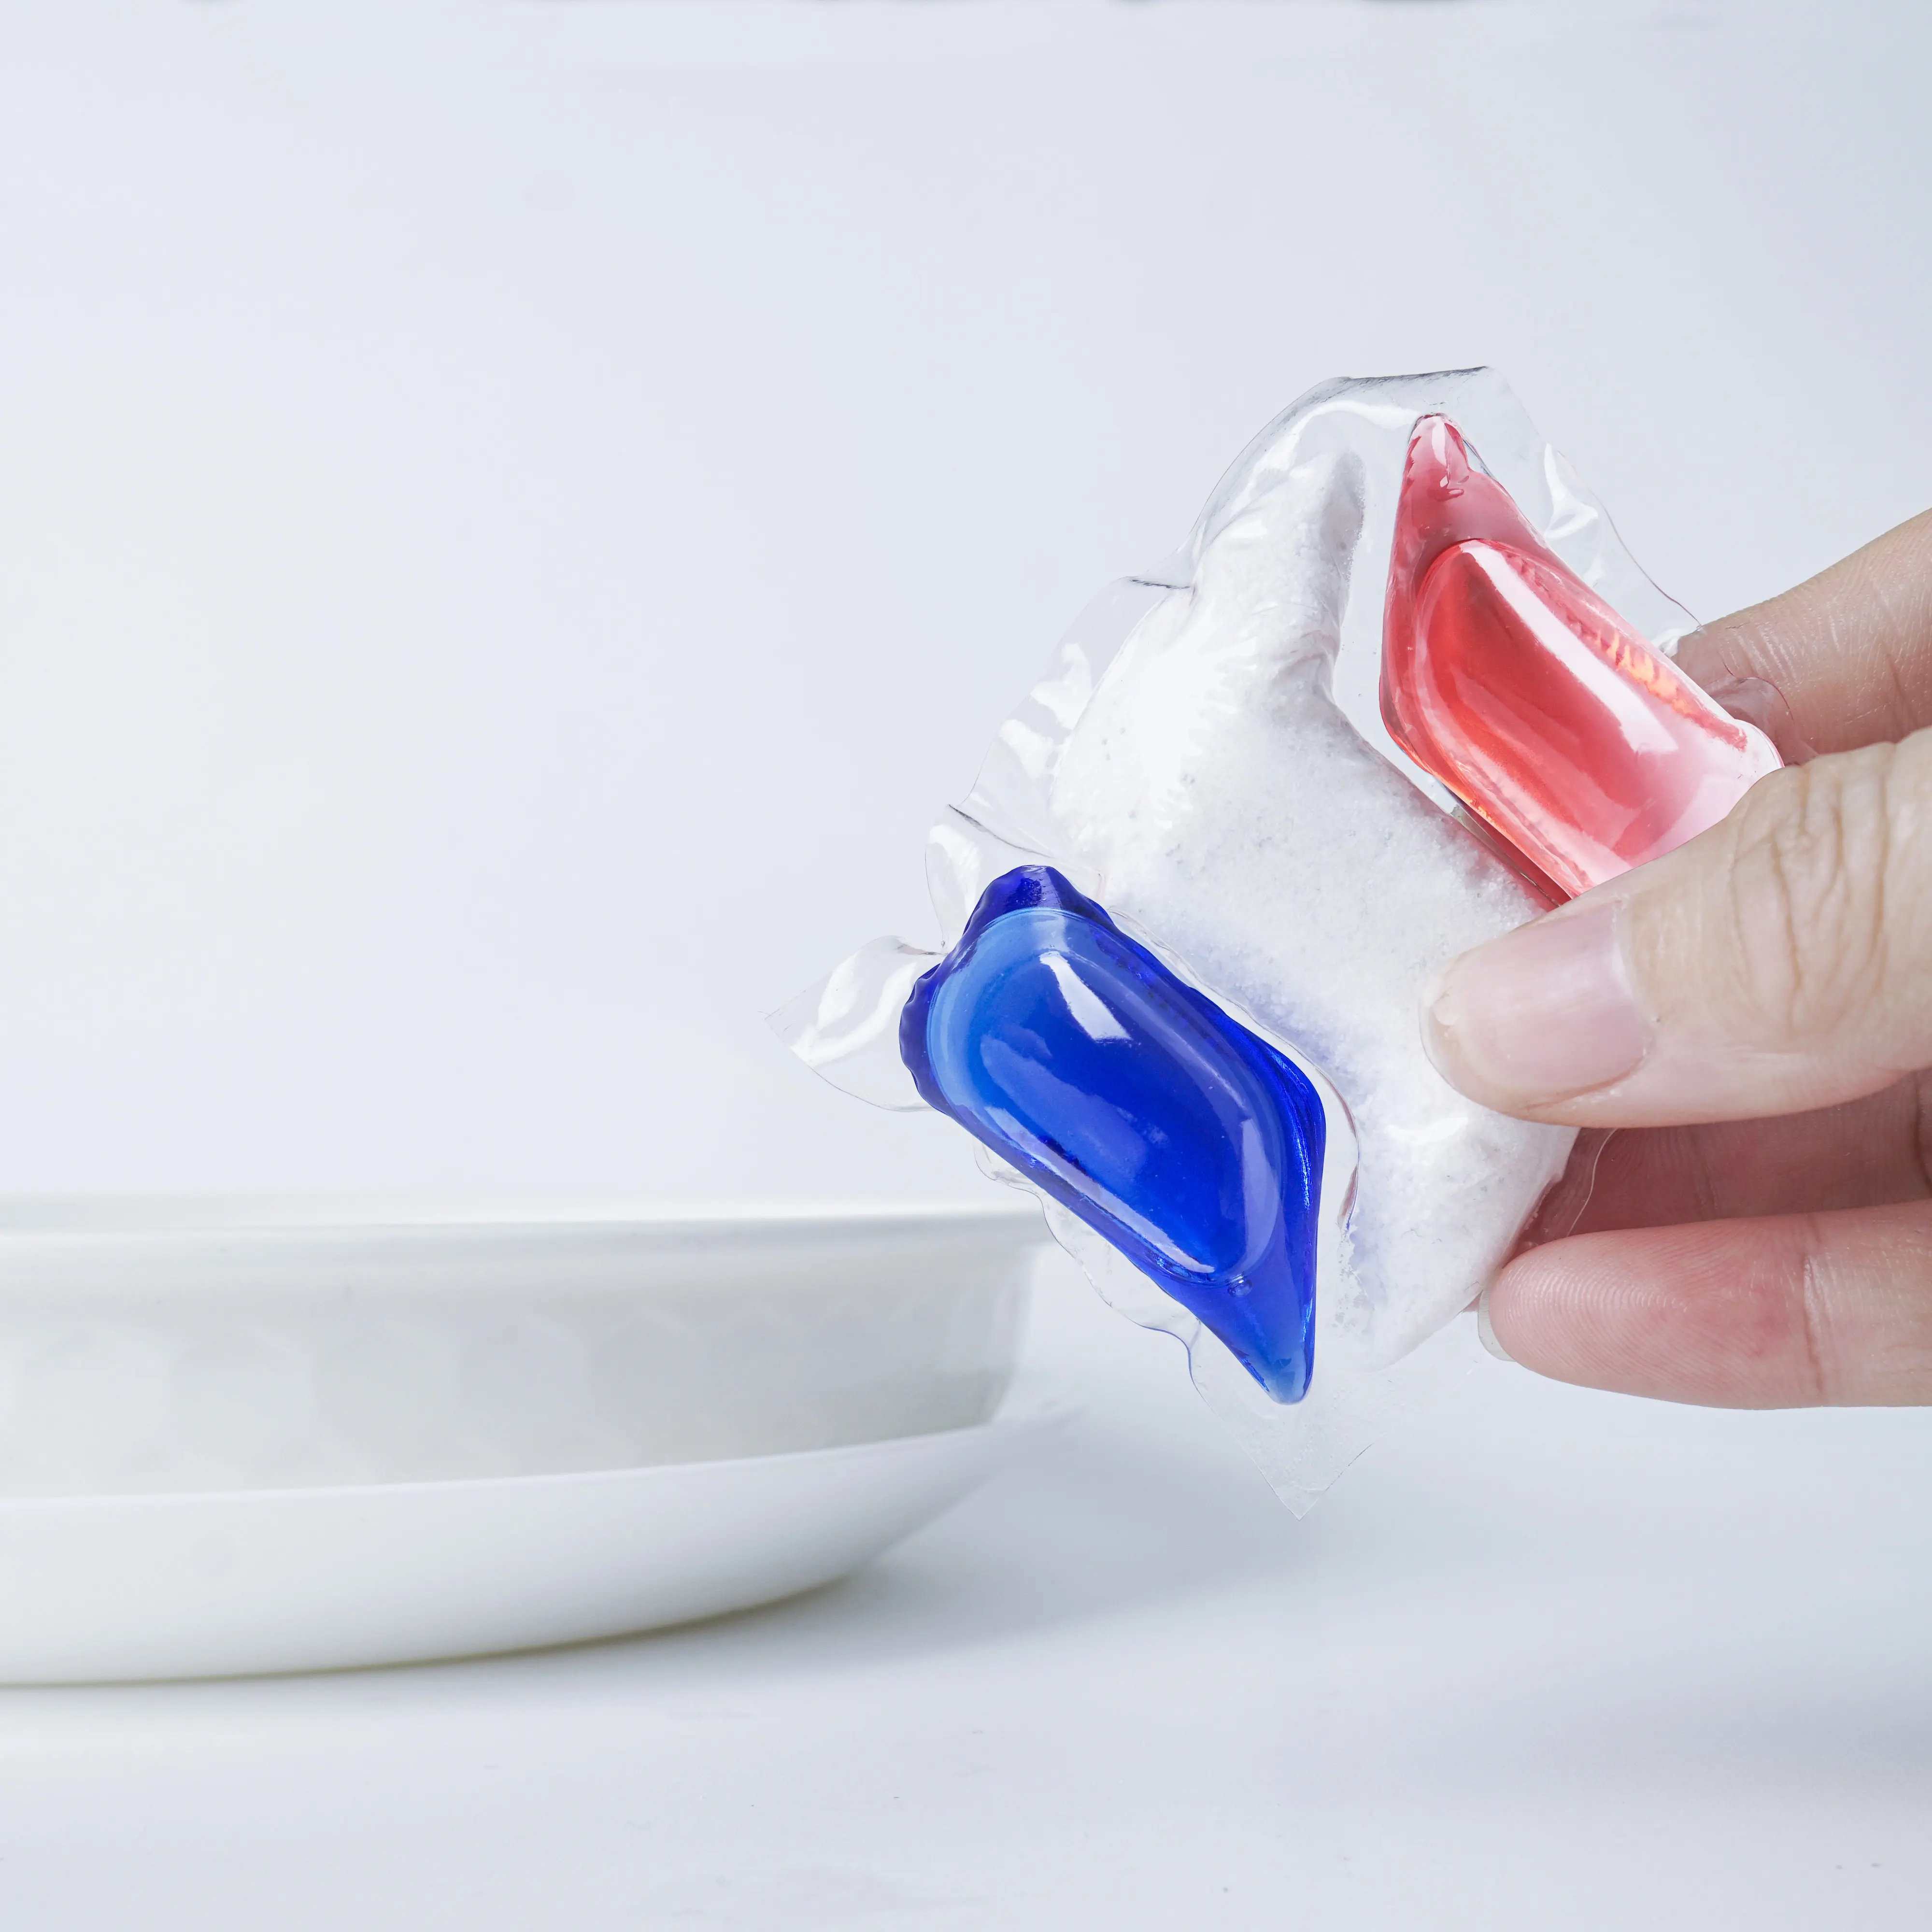 18g Free sample Capsules Dishwasher Detergent Pods Safe Tablet Salt Tabs Eco Friendly Auto Clean Dishwash